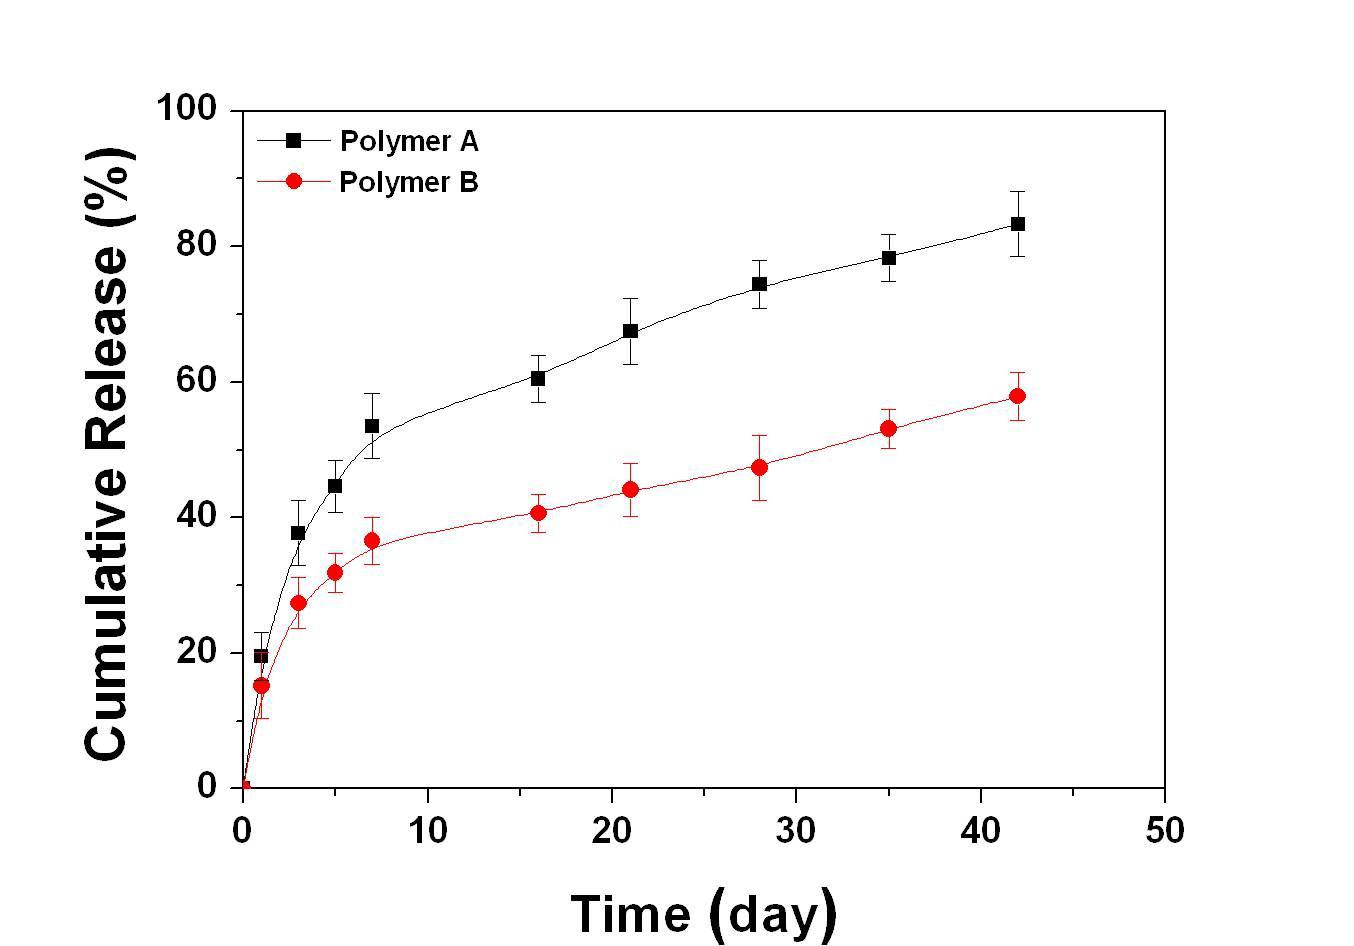 PTX 담지 polymer 코팅된 스테인레스 스틸 스프링에서의 약물 방출거동: 40% PTX 담지 -■- polymer A , -●- polymer B.